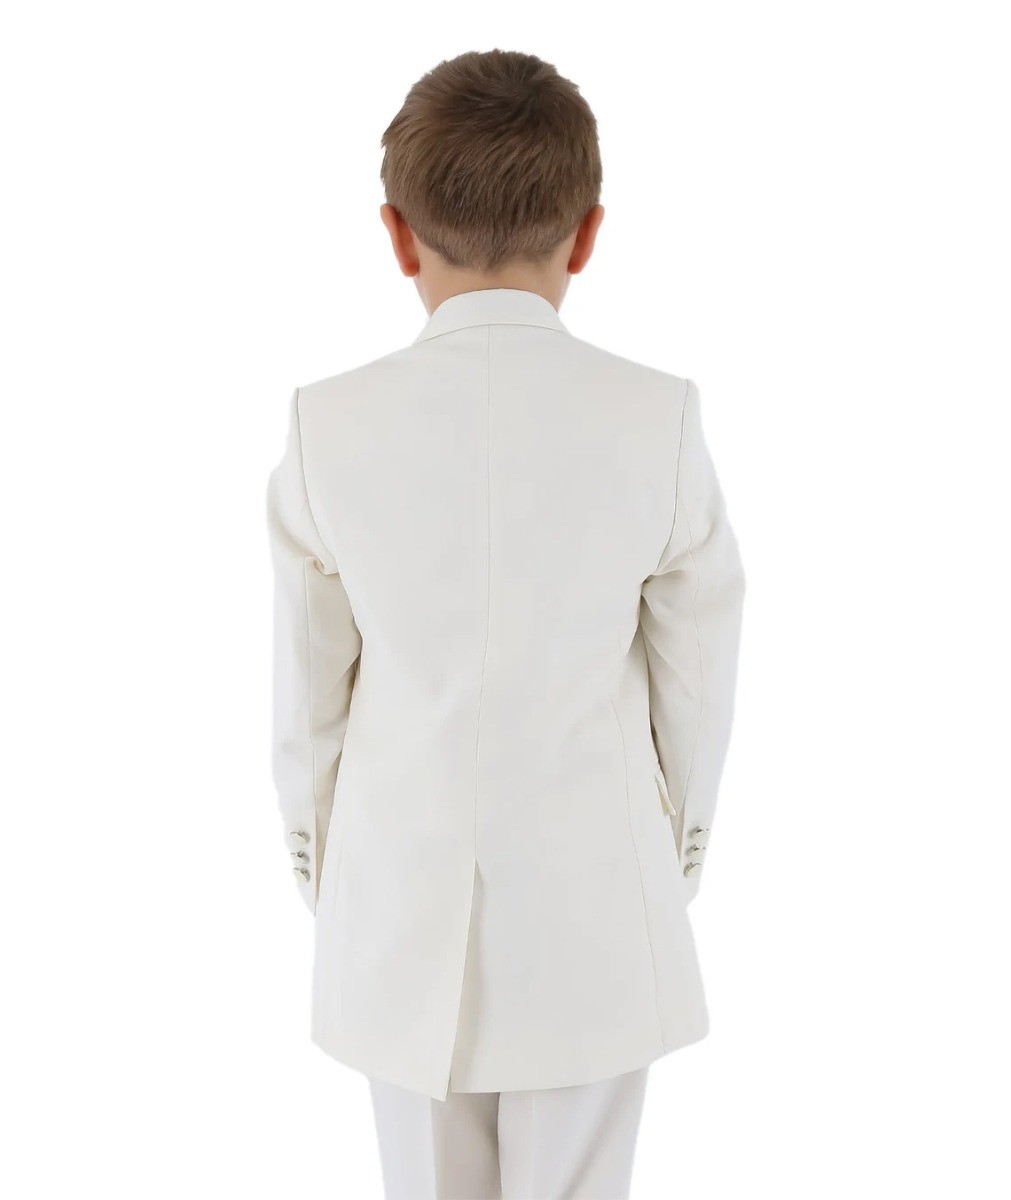 Kinder Jungen Anzug - Creme - Elfenbein